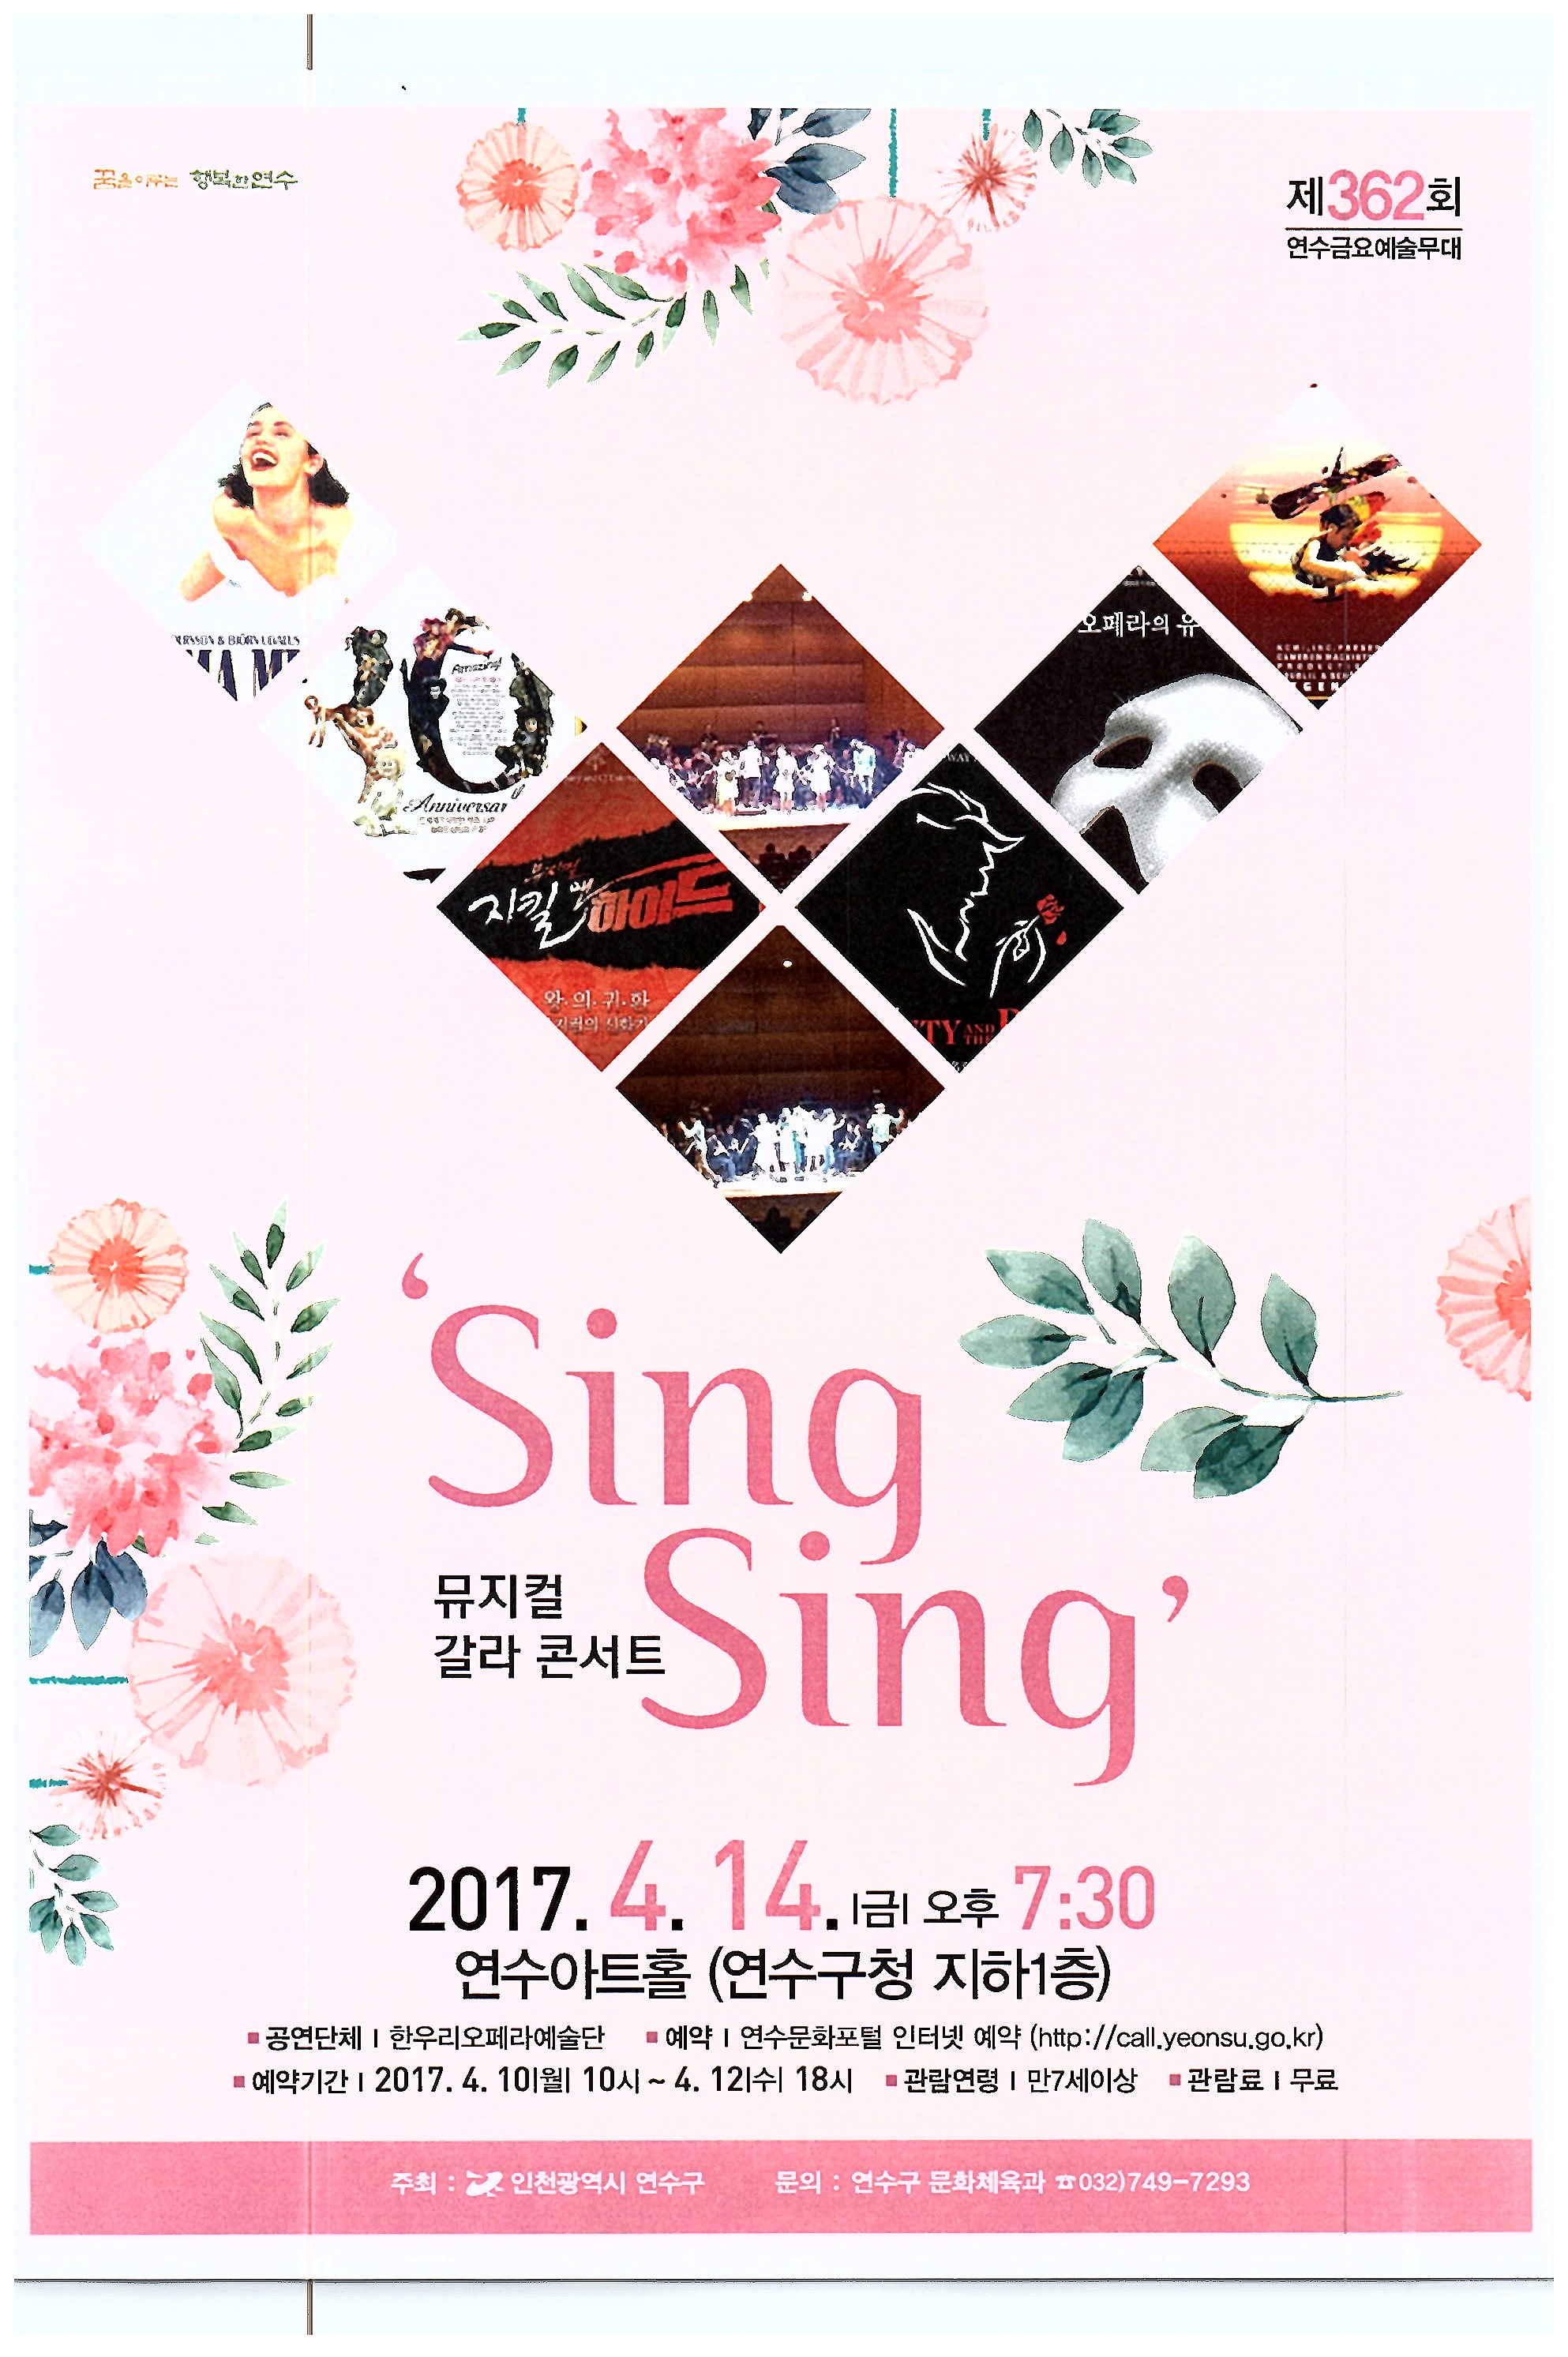 뮤지컬 갈라 콘서트 ‘Sing Sing’ 공연포스터. 자세한 내용은 하단의 공연소개 내용 참고